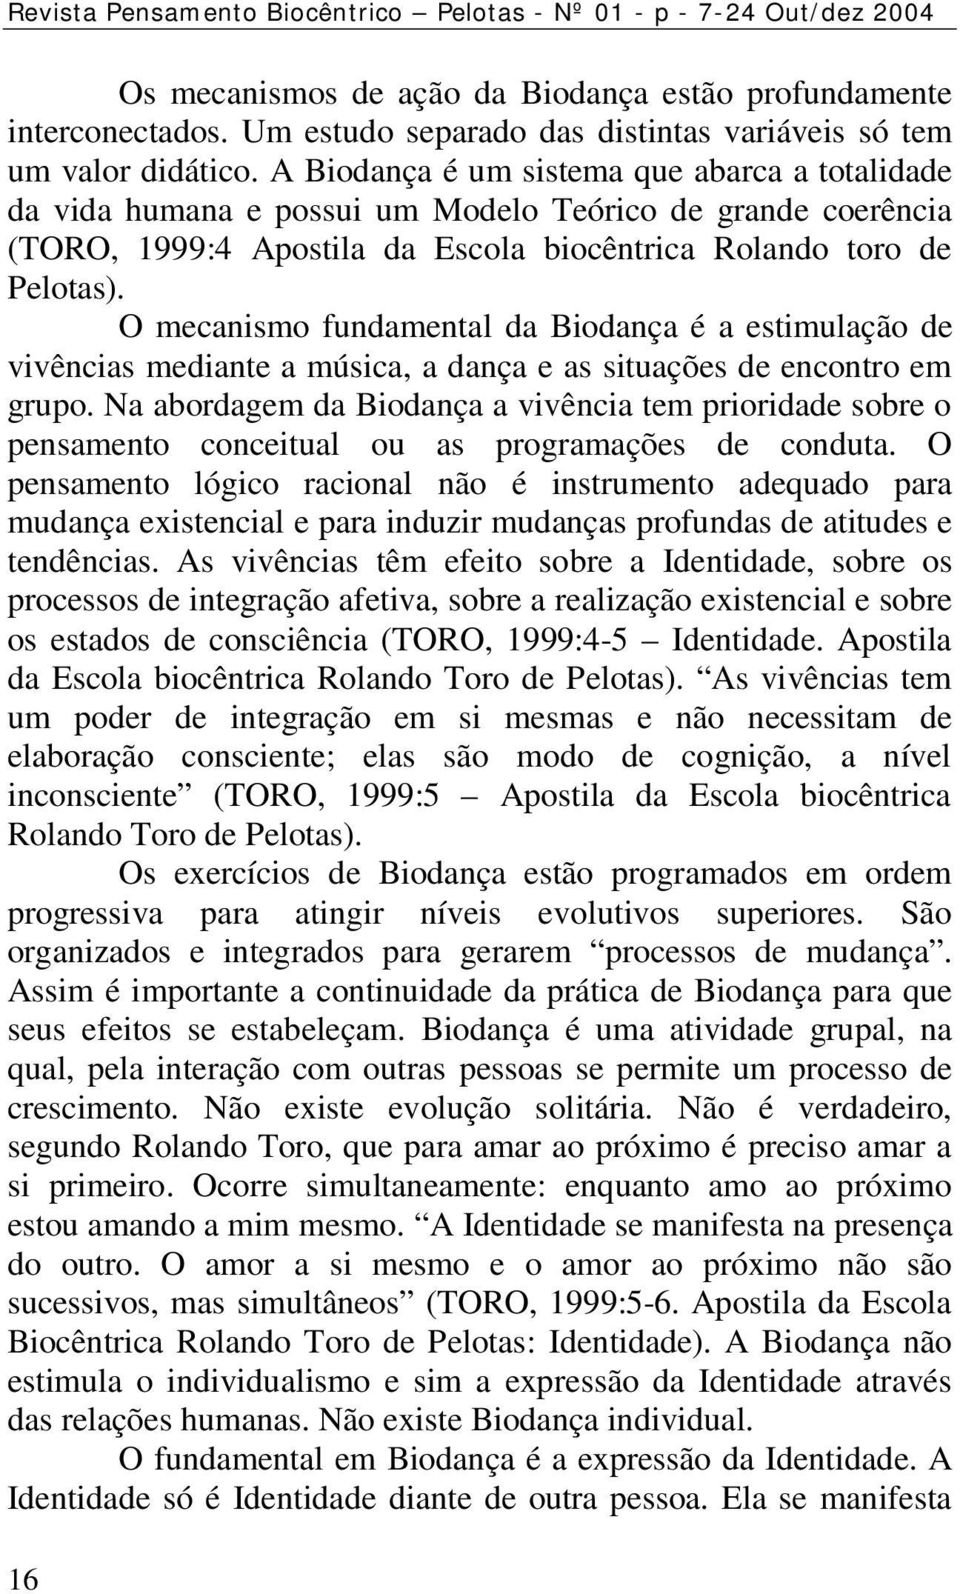 A Biodança é um sistema que abarca a totalidade da vida humana e possui um Modelo Teórico de grande coerência (TORO, 1999:4 Apostila da Escola biocêntrica Rolando toro de Pelotas).